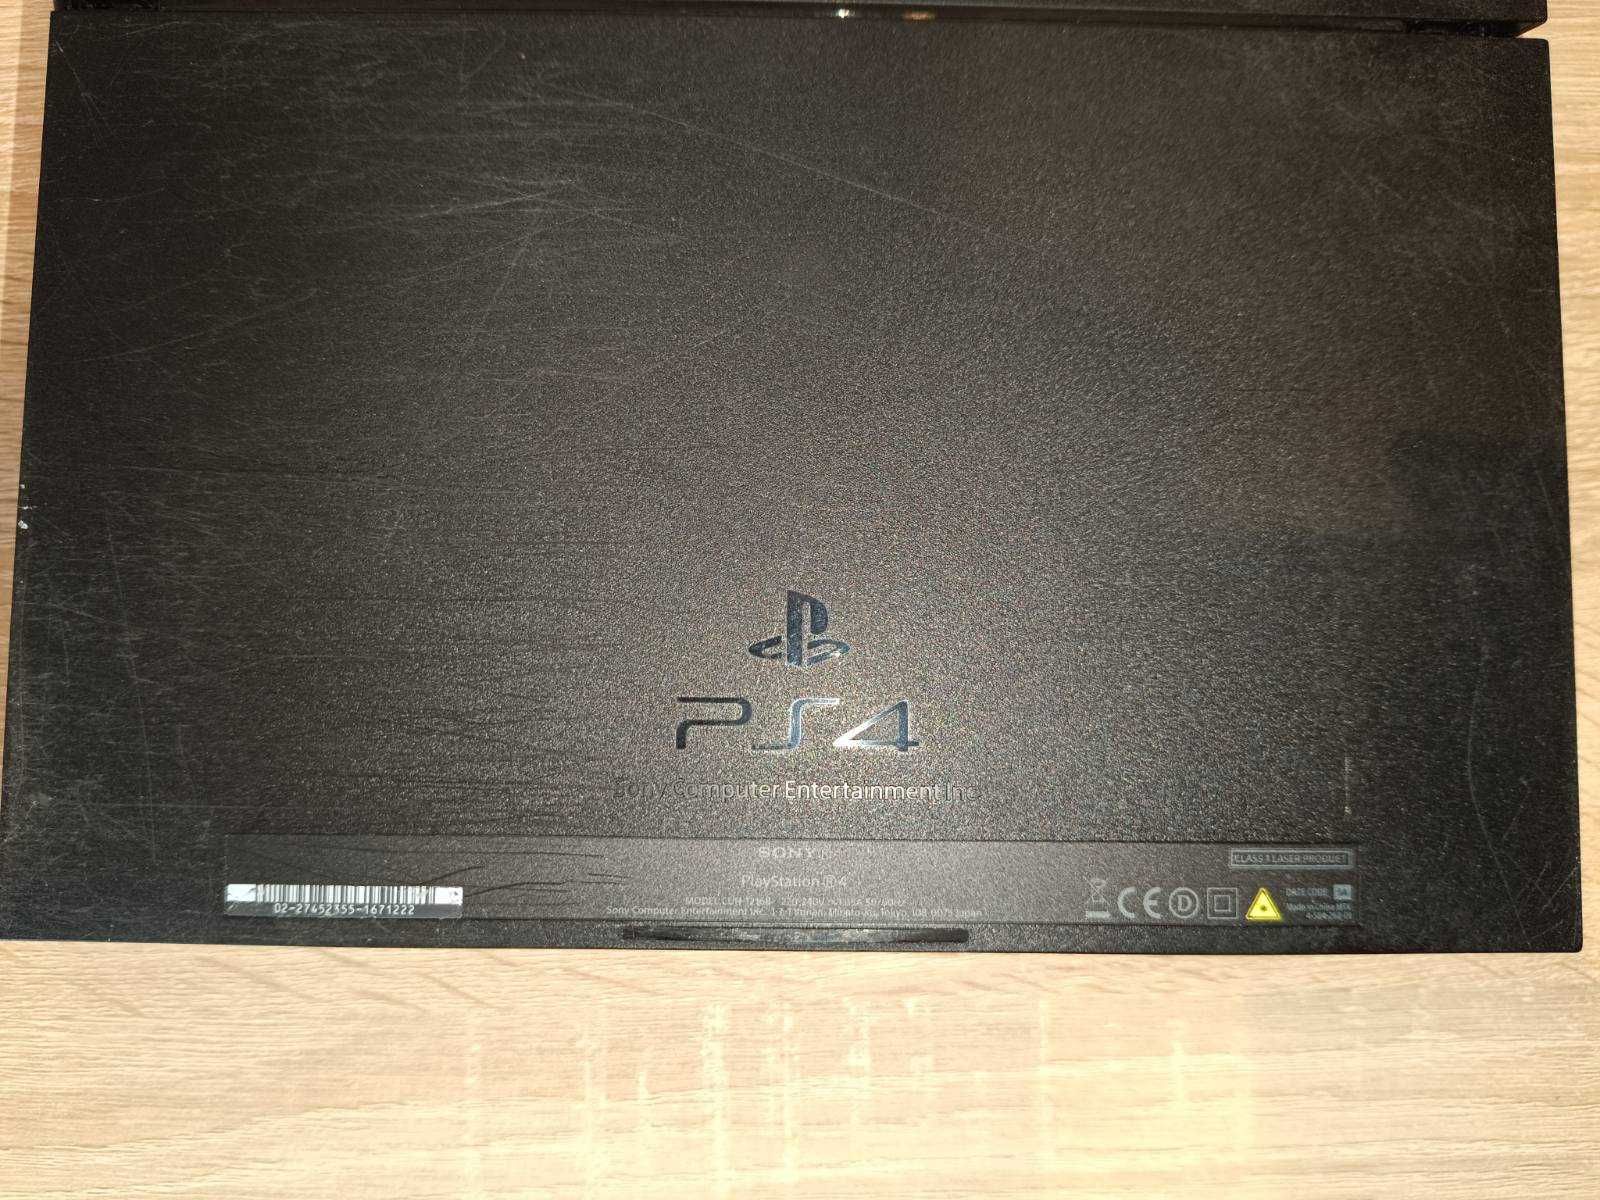 Sony Playstation 4, 1 Tb